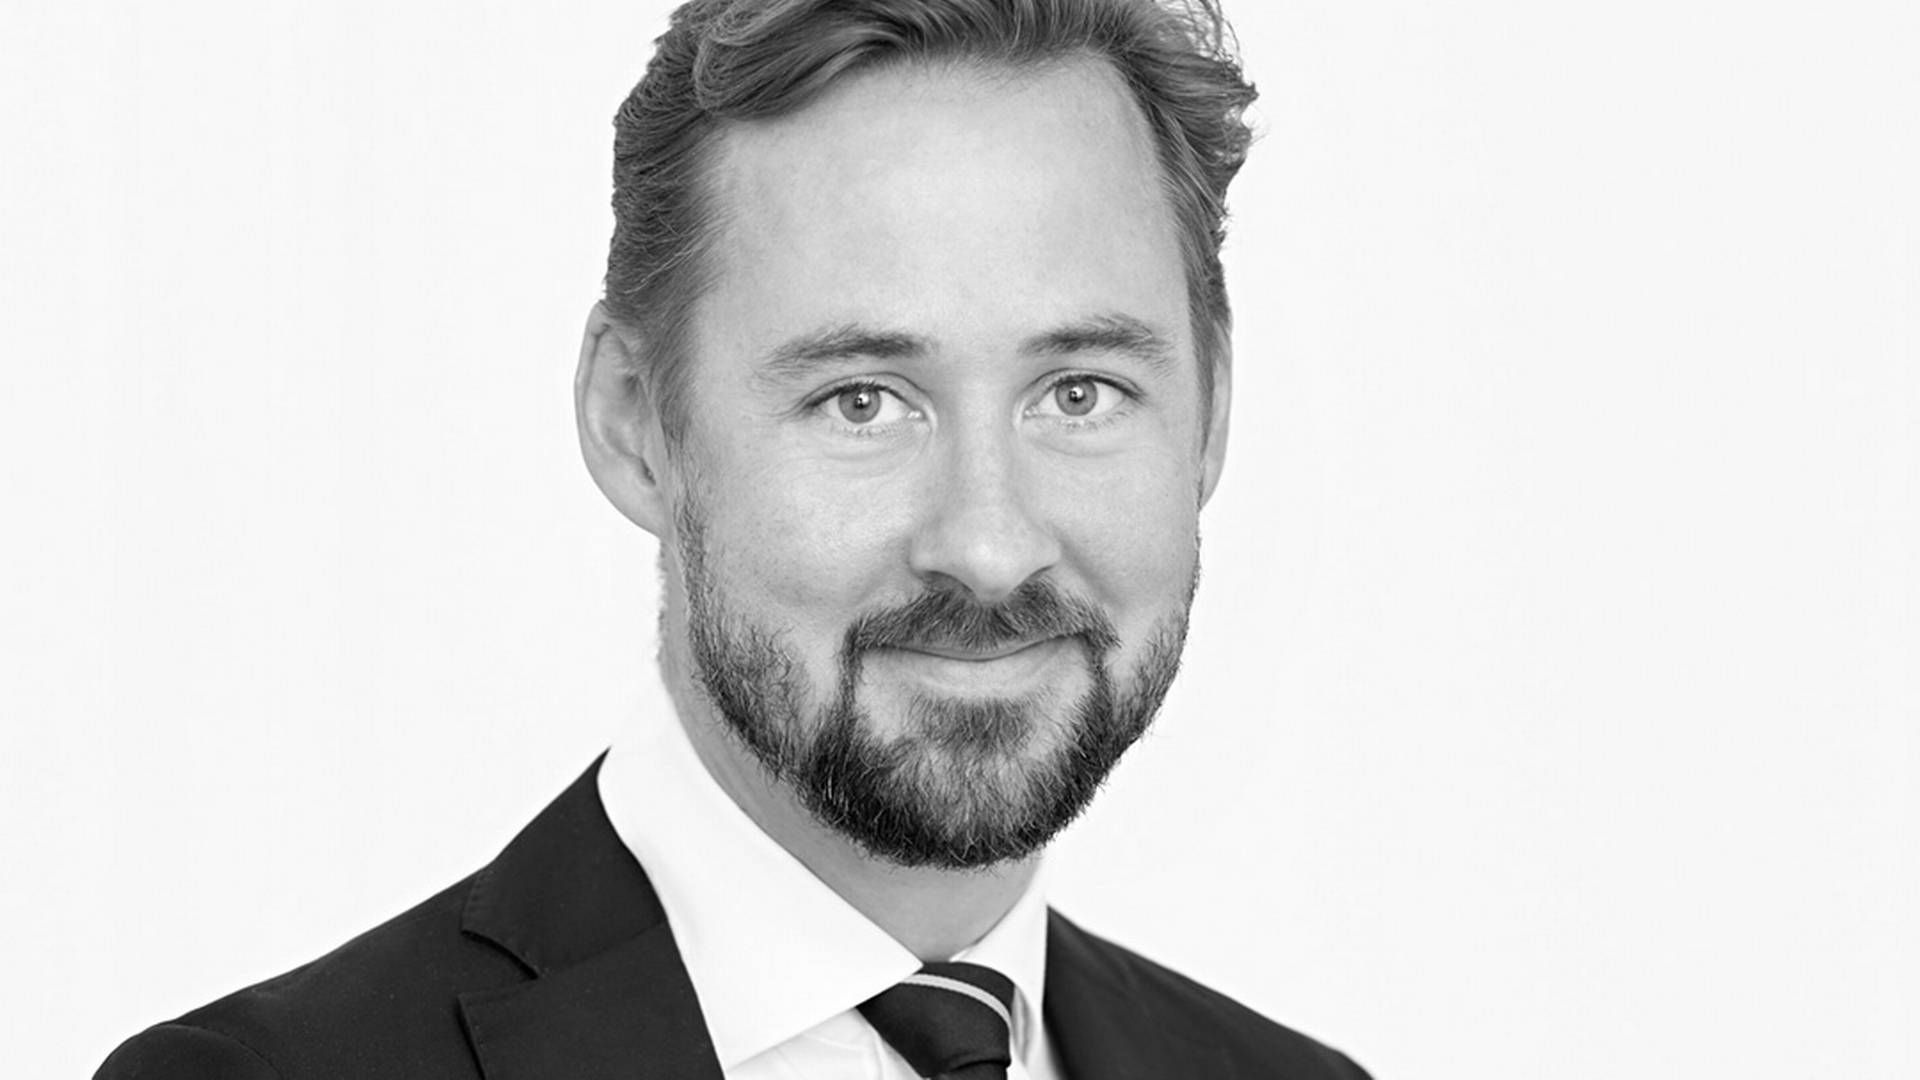 Christian Hannibal blev konstitueret branchedirektør for DI Digital, efter Lars Frelle blev forfremmet og forlod posten i 2020. | Foto: Pr